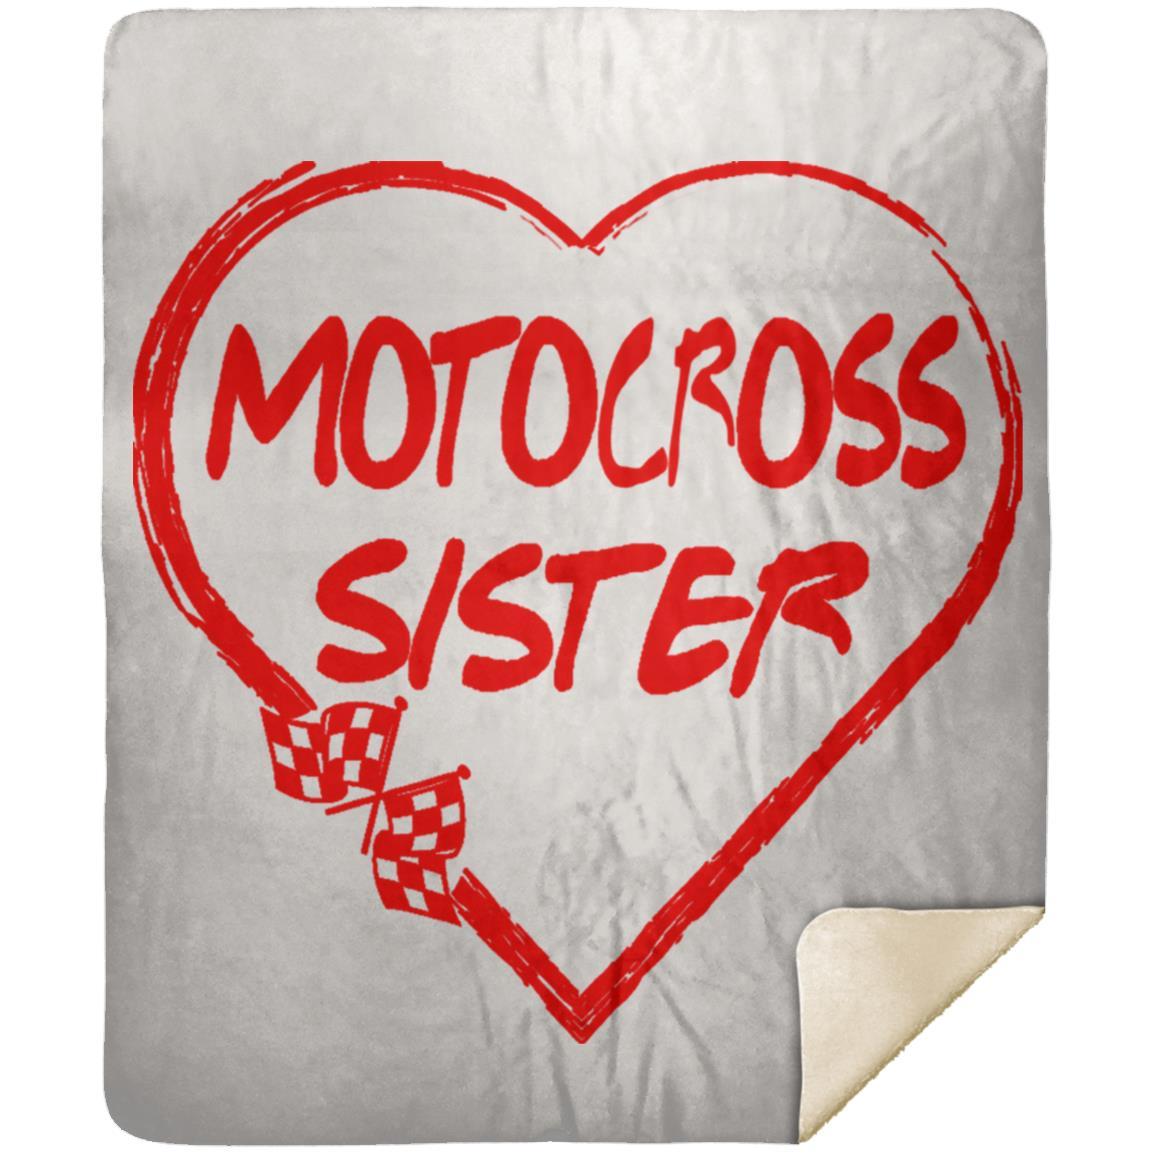 Motocross Sister Heart Premium Mink Sherpa Blanket 50x60